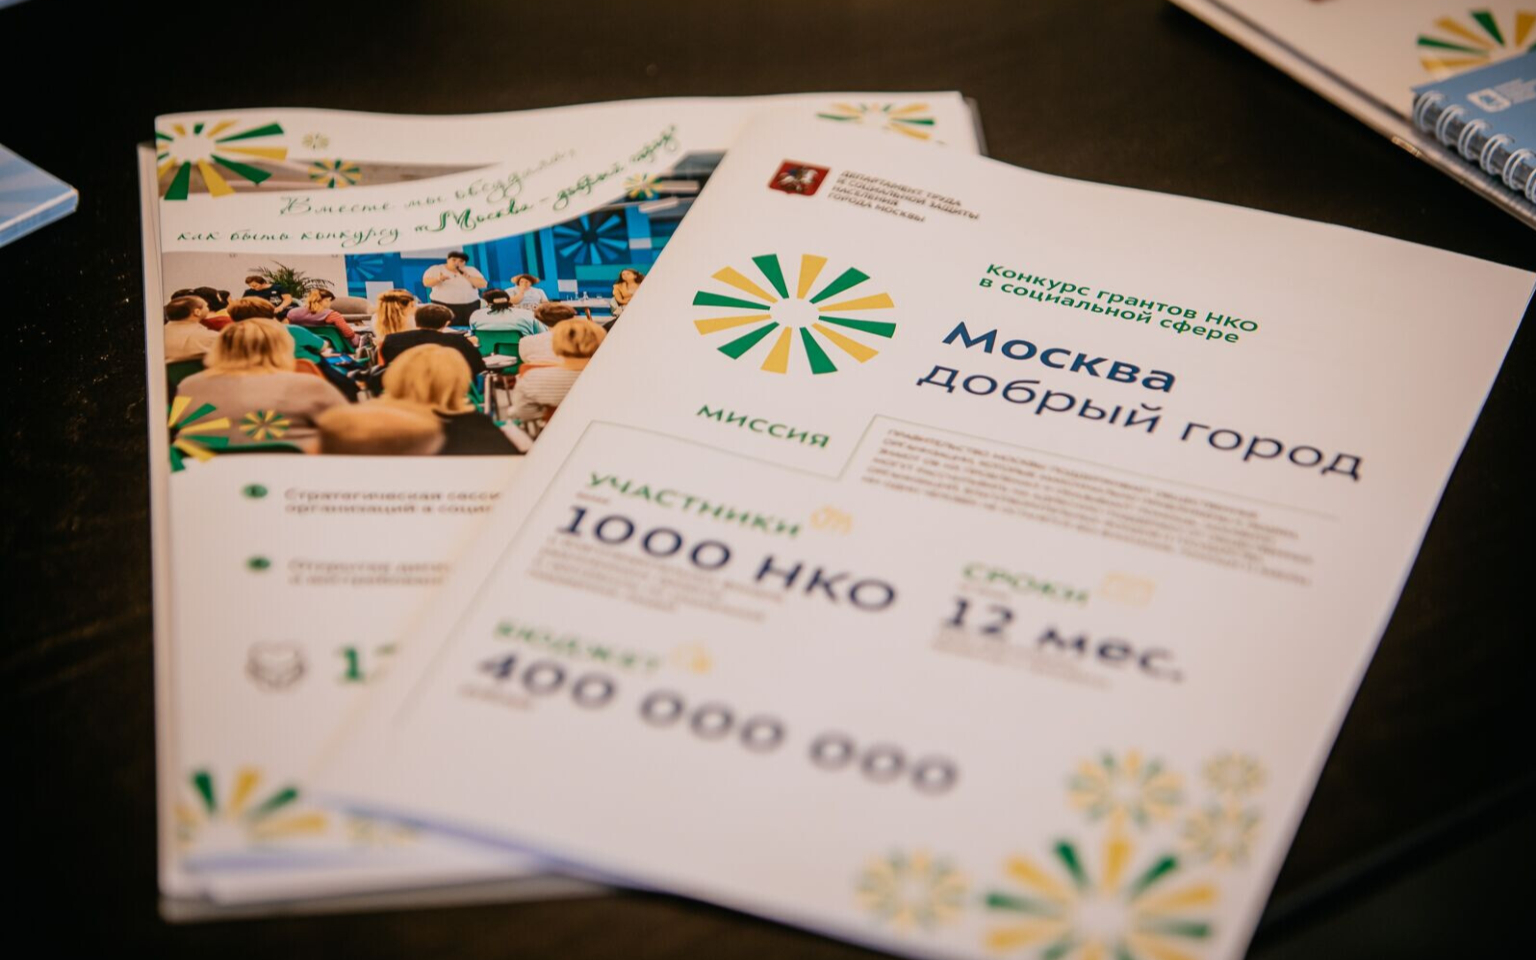 Более 100 НКО подготовили заявки на получение грантов от Москвы